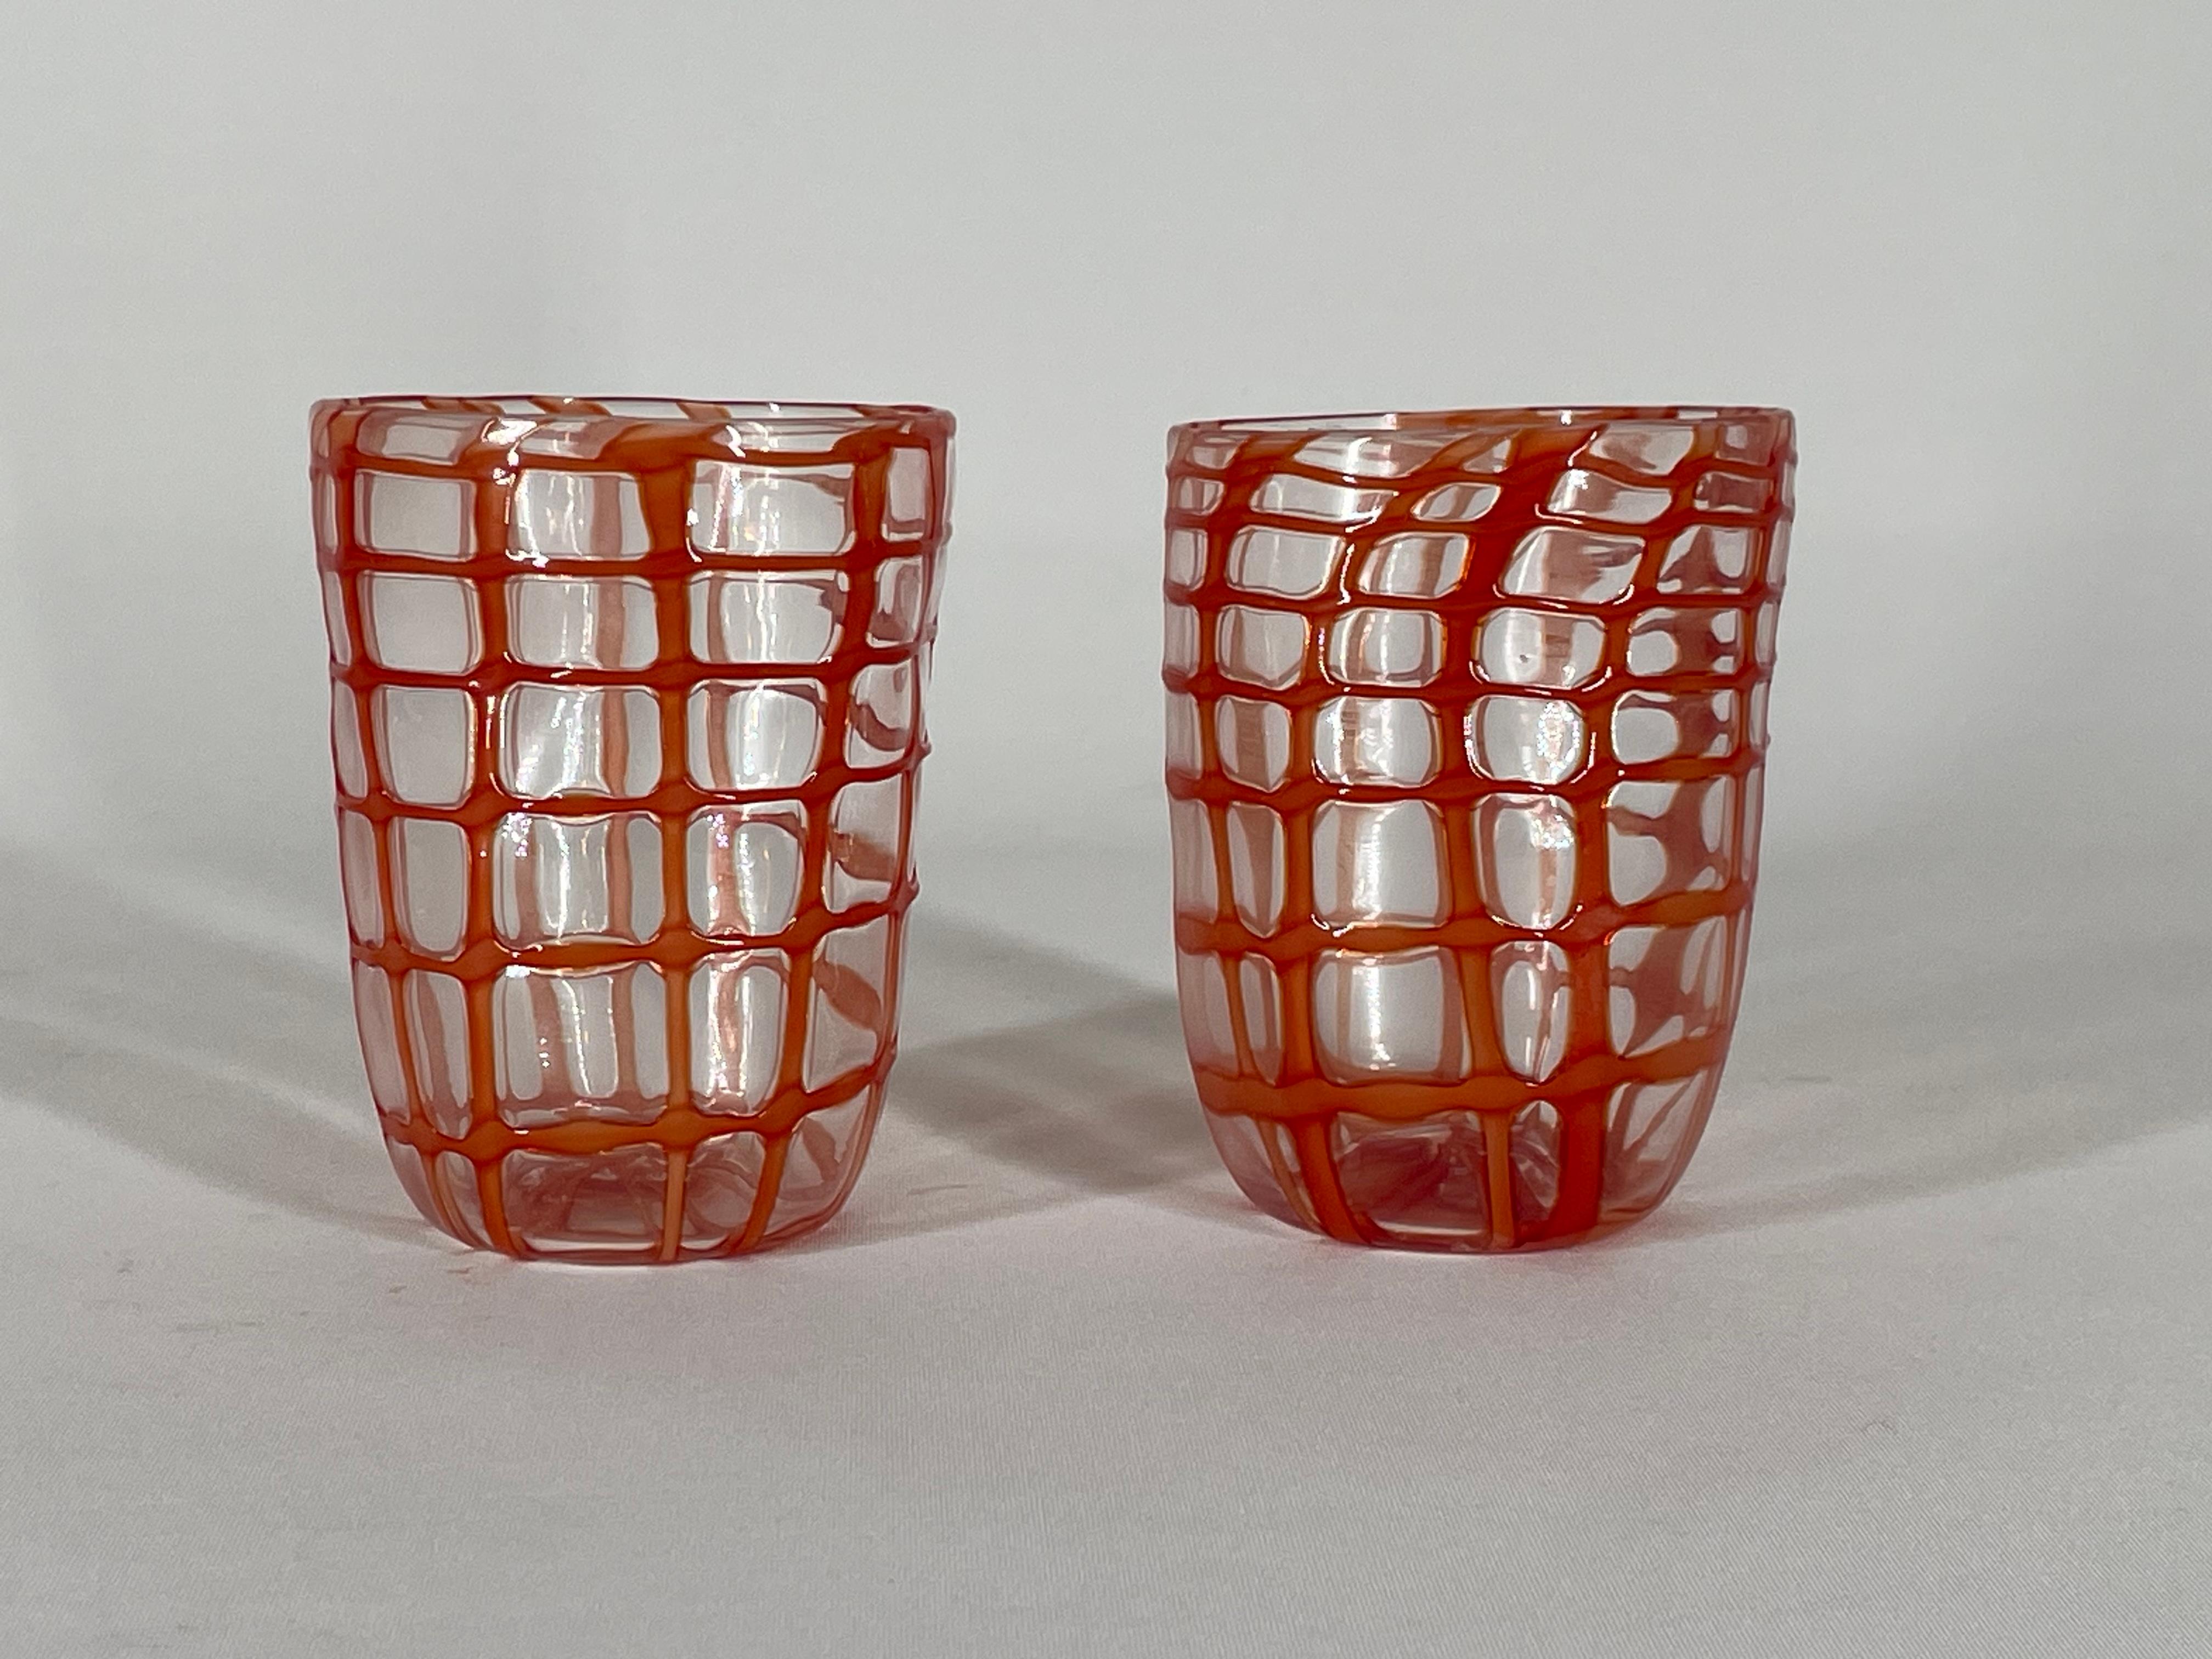 Die Exzellenz des Muranoglases: Das 'Rete'-Glas

Willkommen im zeitlosen Universum der Murano-Glaskunst, wo sich handwerkliches Können mit kreativer Innovation zu außergewöhnlichen Kunstwerken verbindet. Wir freuen uns, Ihnen das Glas 'Rete'